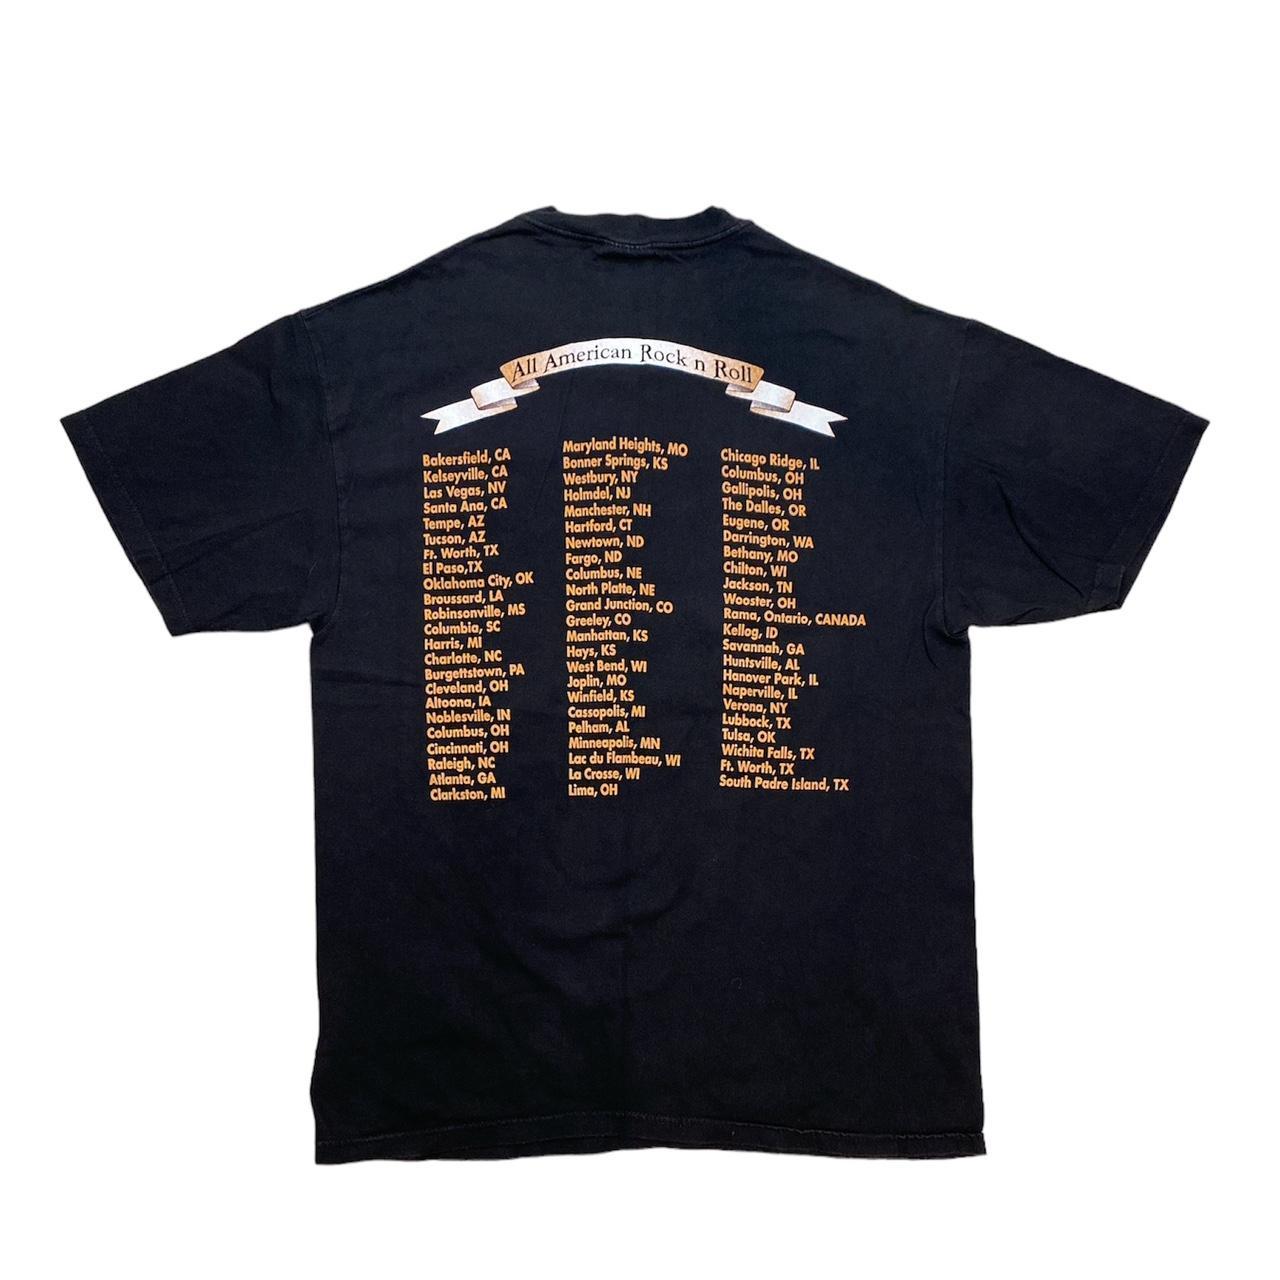 38 Special Tour T shirt Size: L Pit to Pit:... - Depop